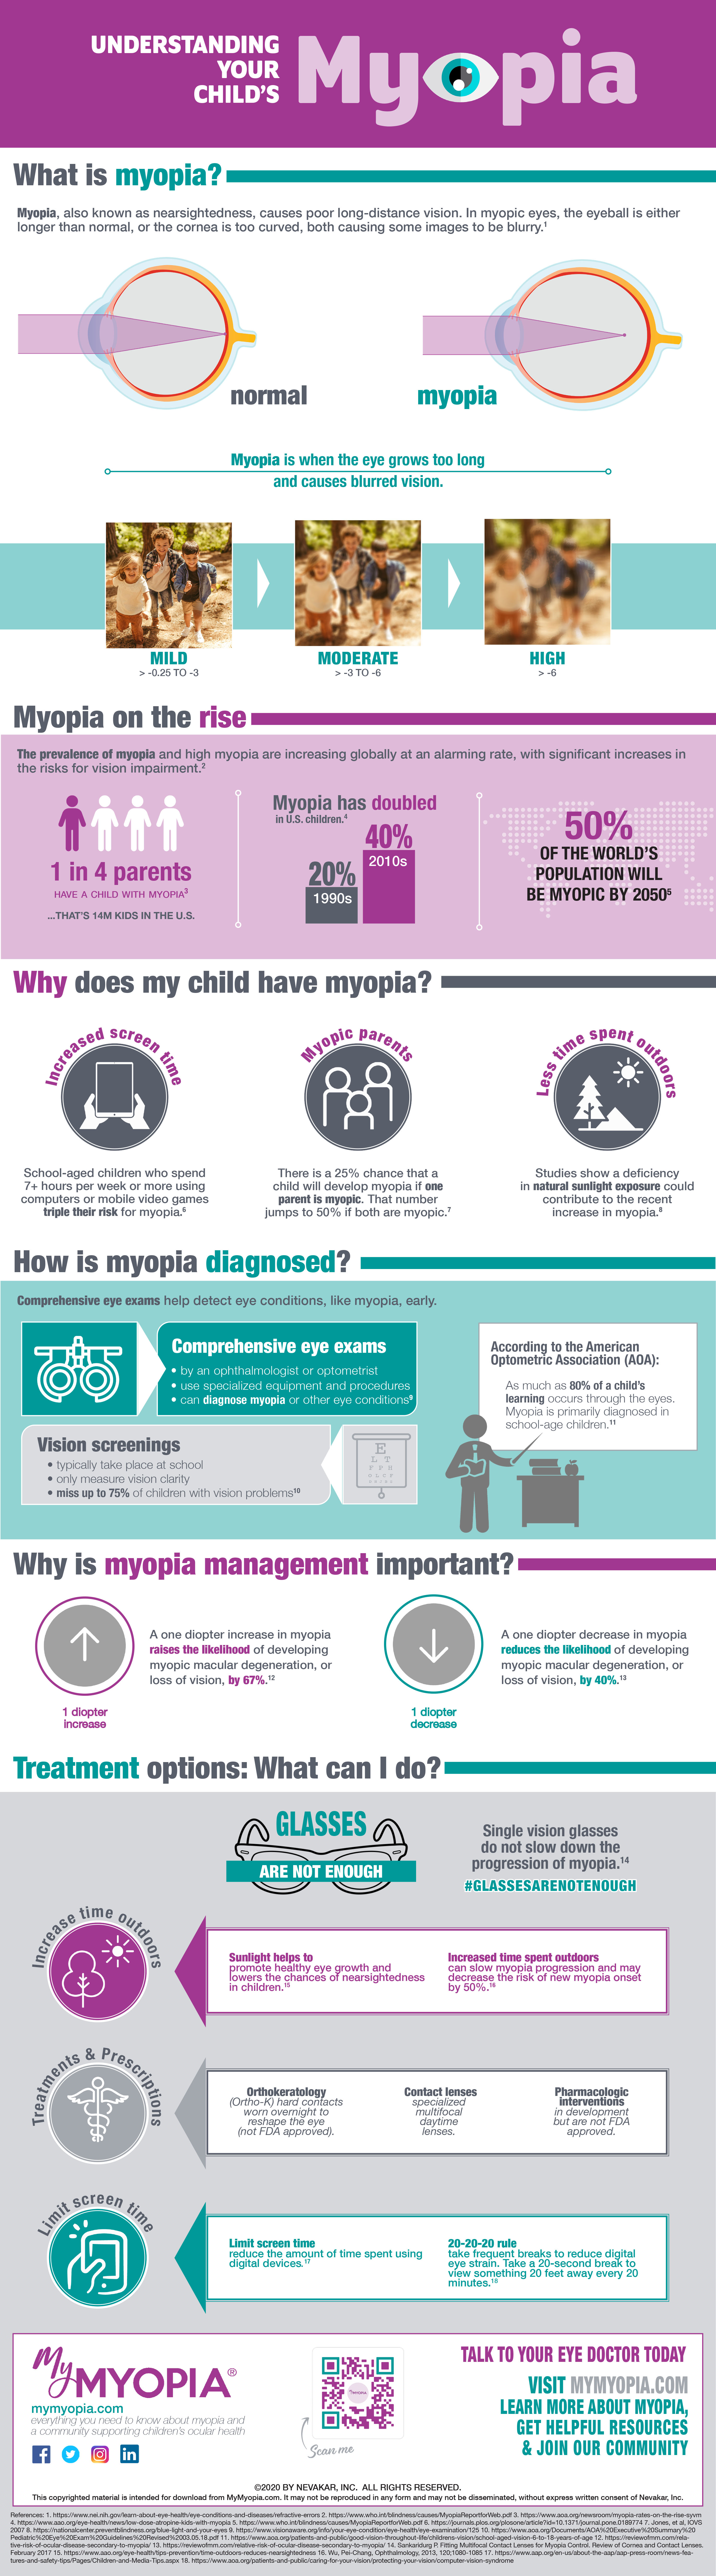 myopia infographic